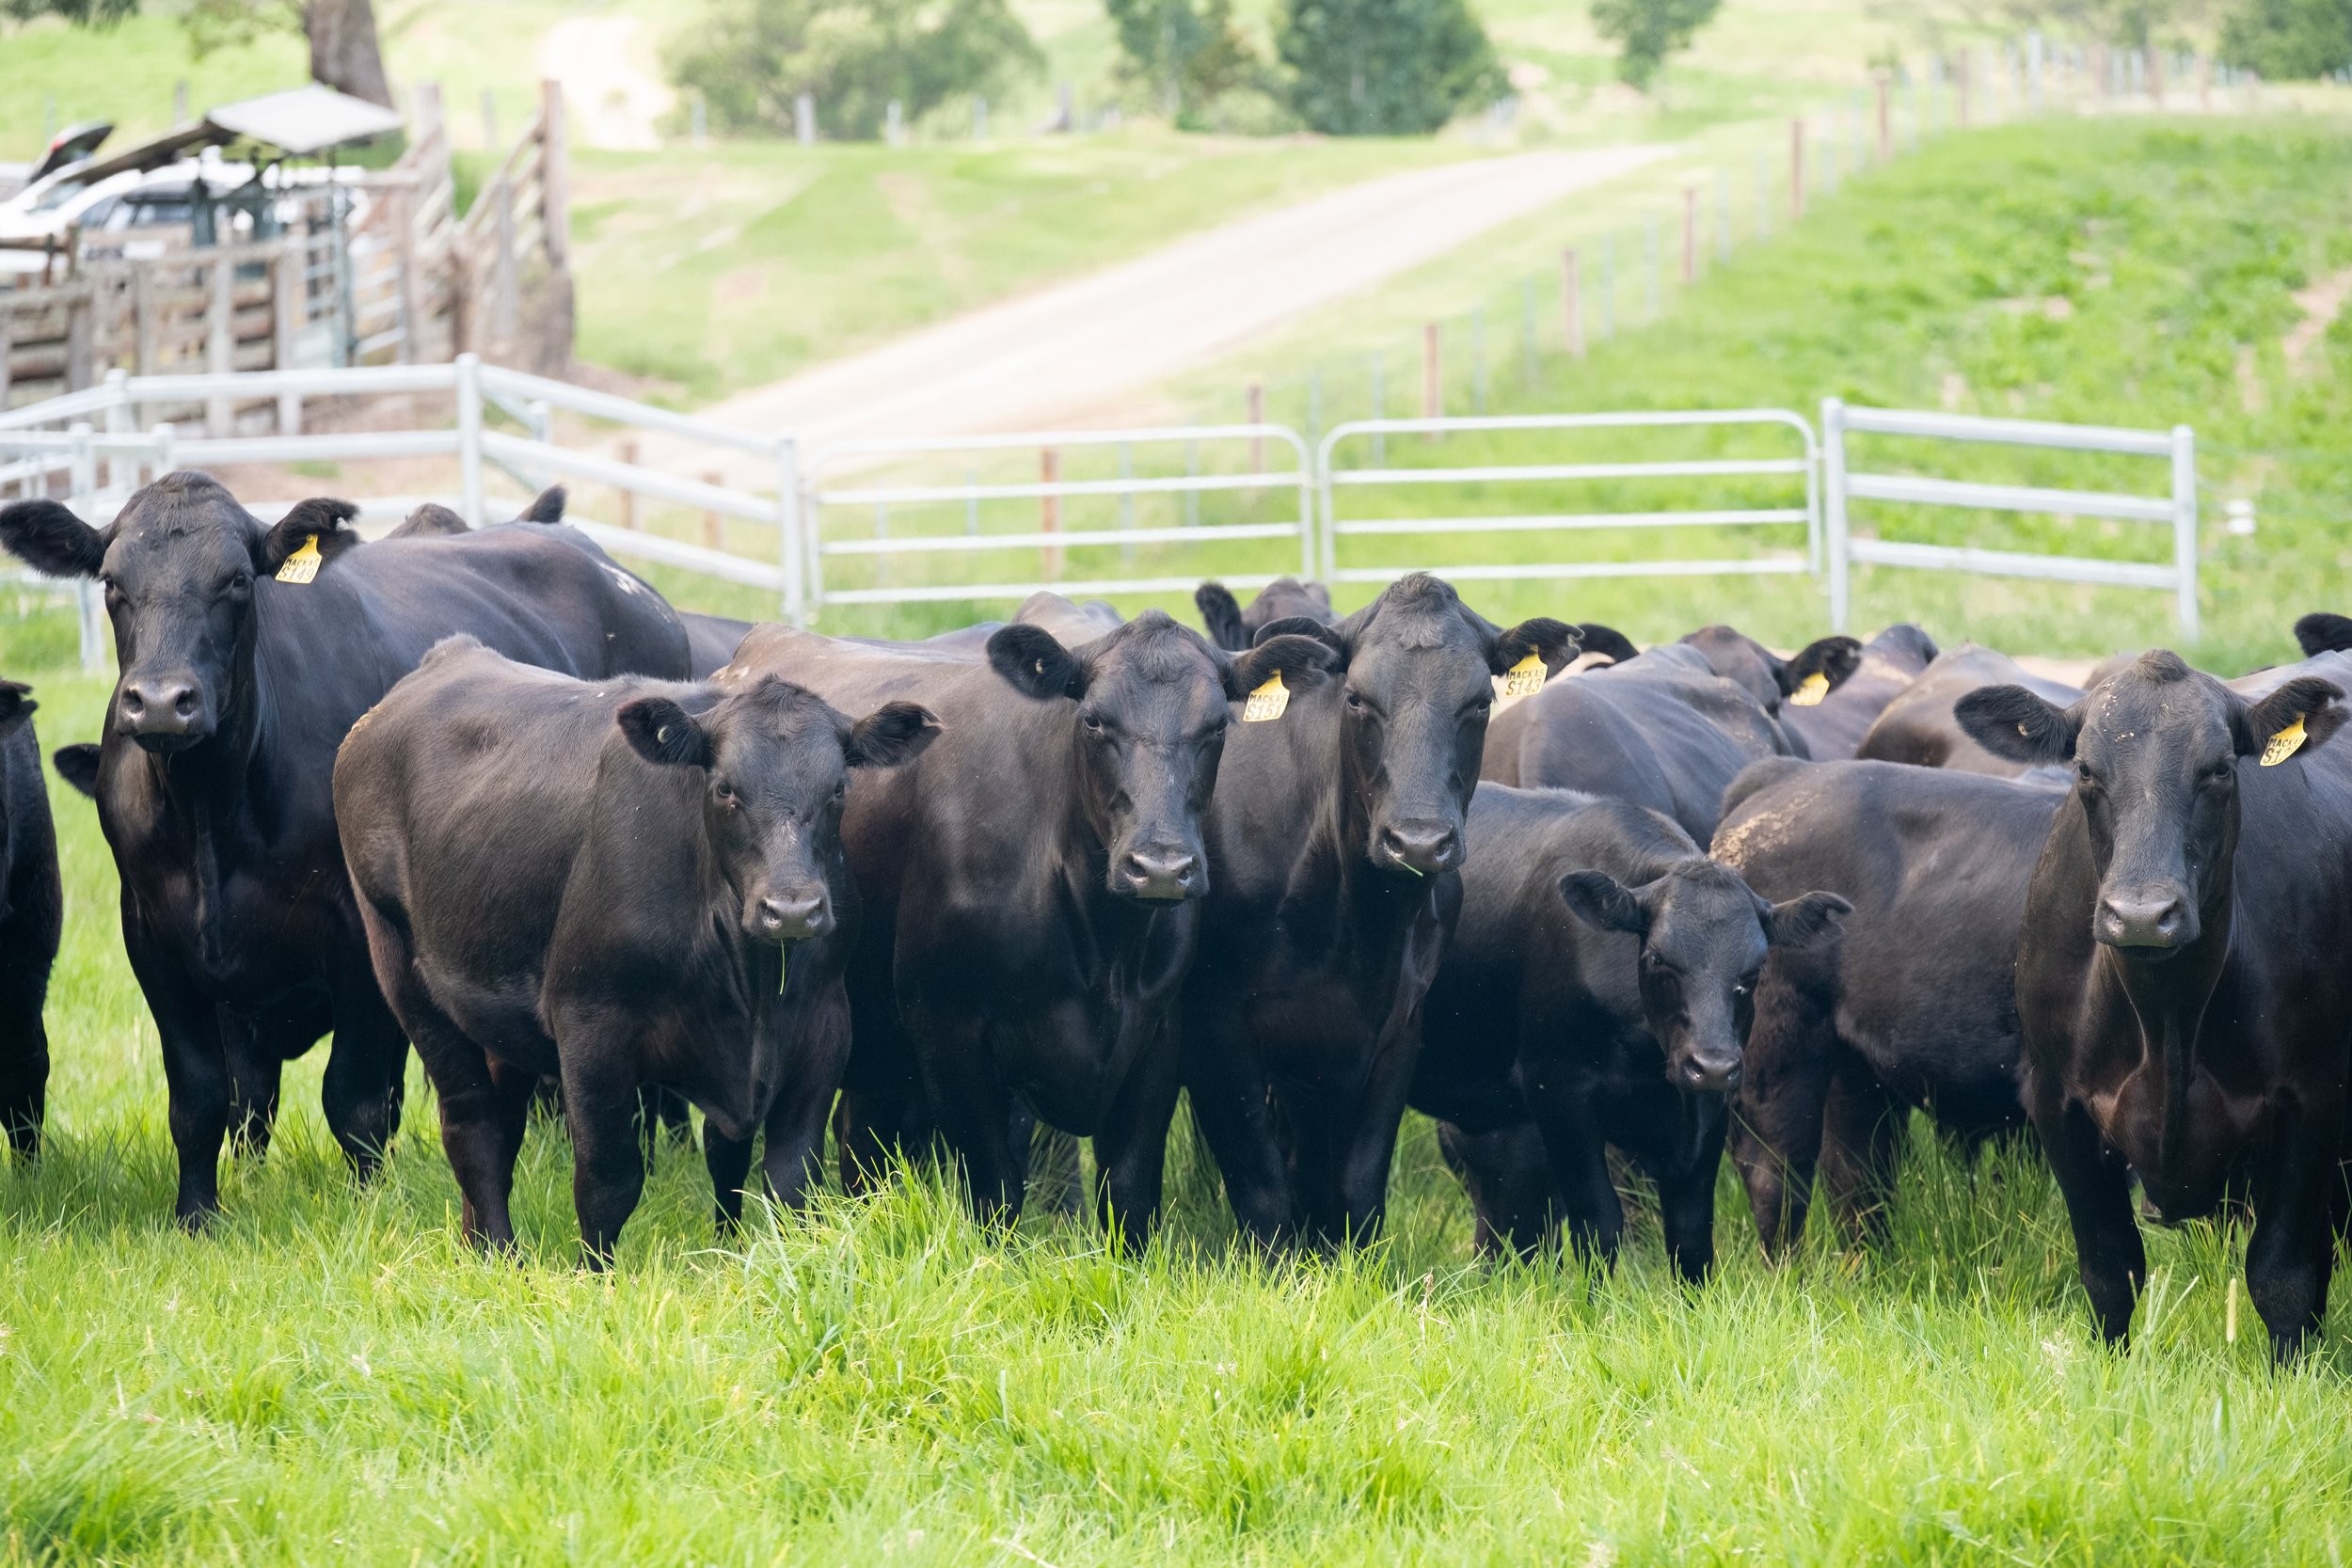 Mackas-Female-Sale-Heifers-Calves-2.jpg